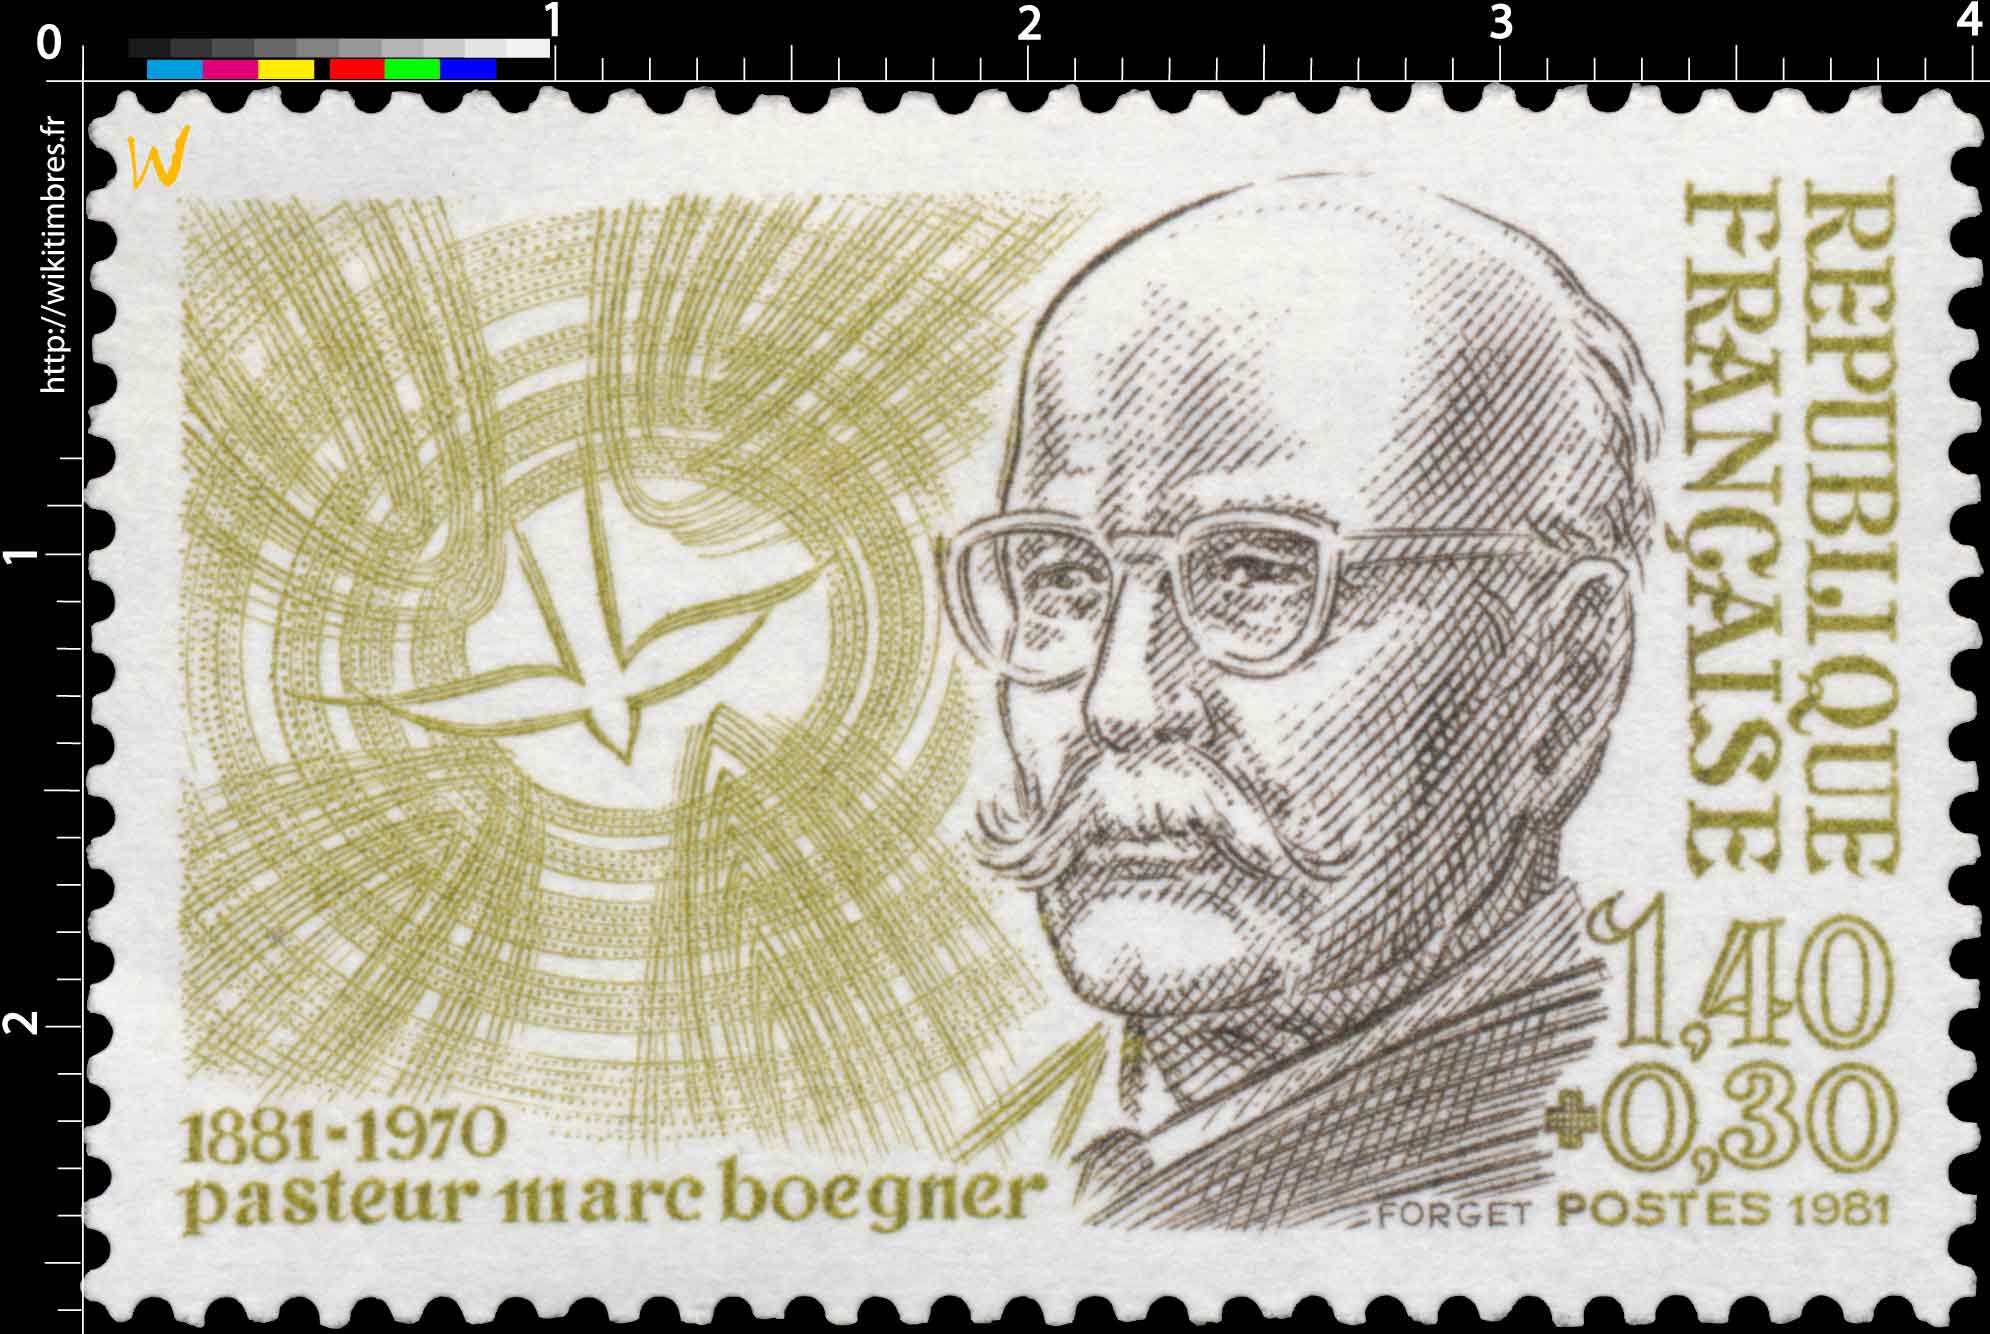 1981 pasteur marc Boegner 1881-1970